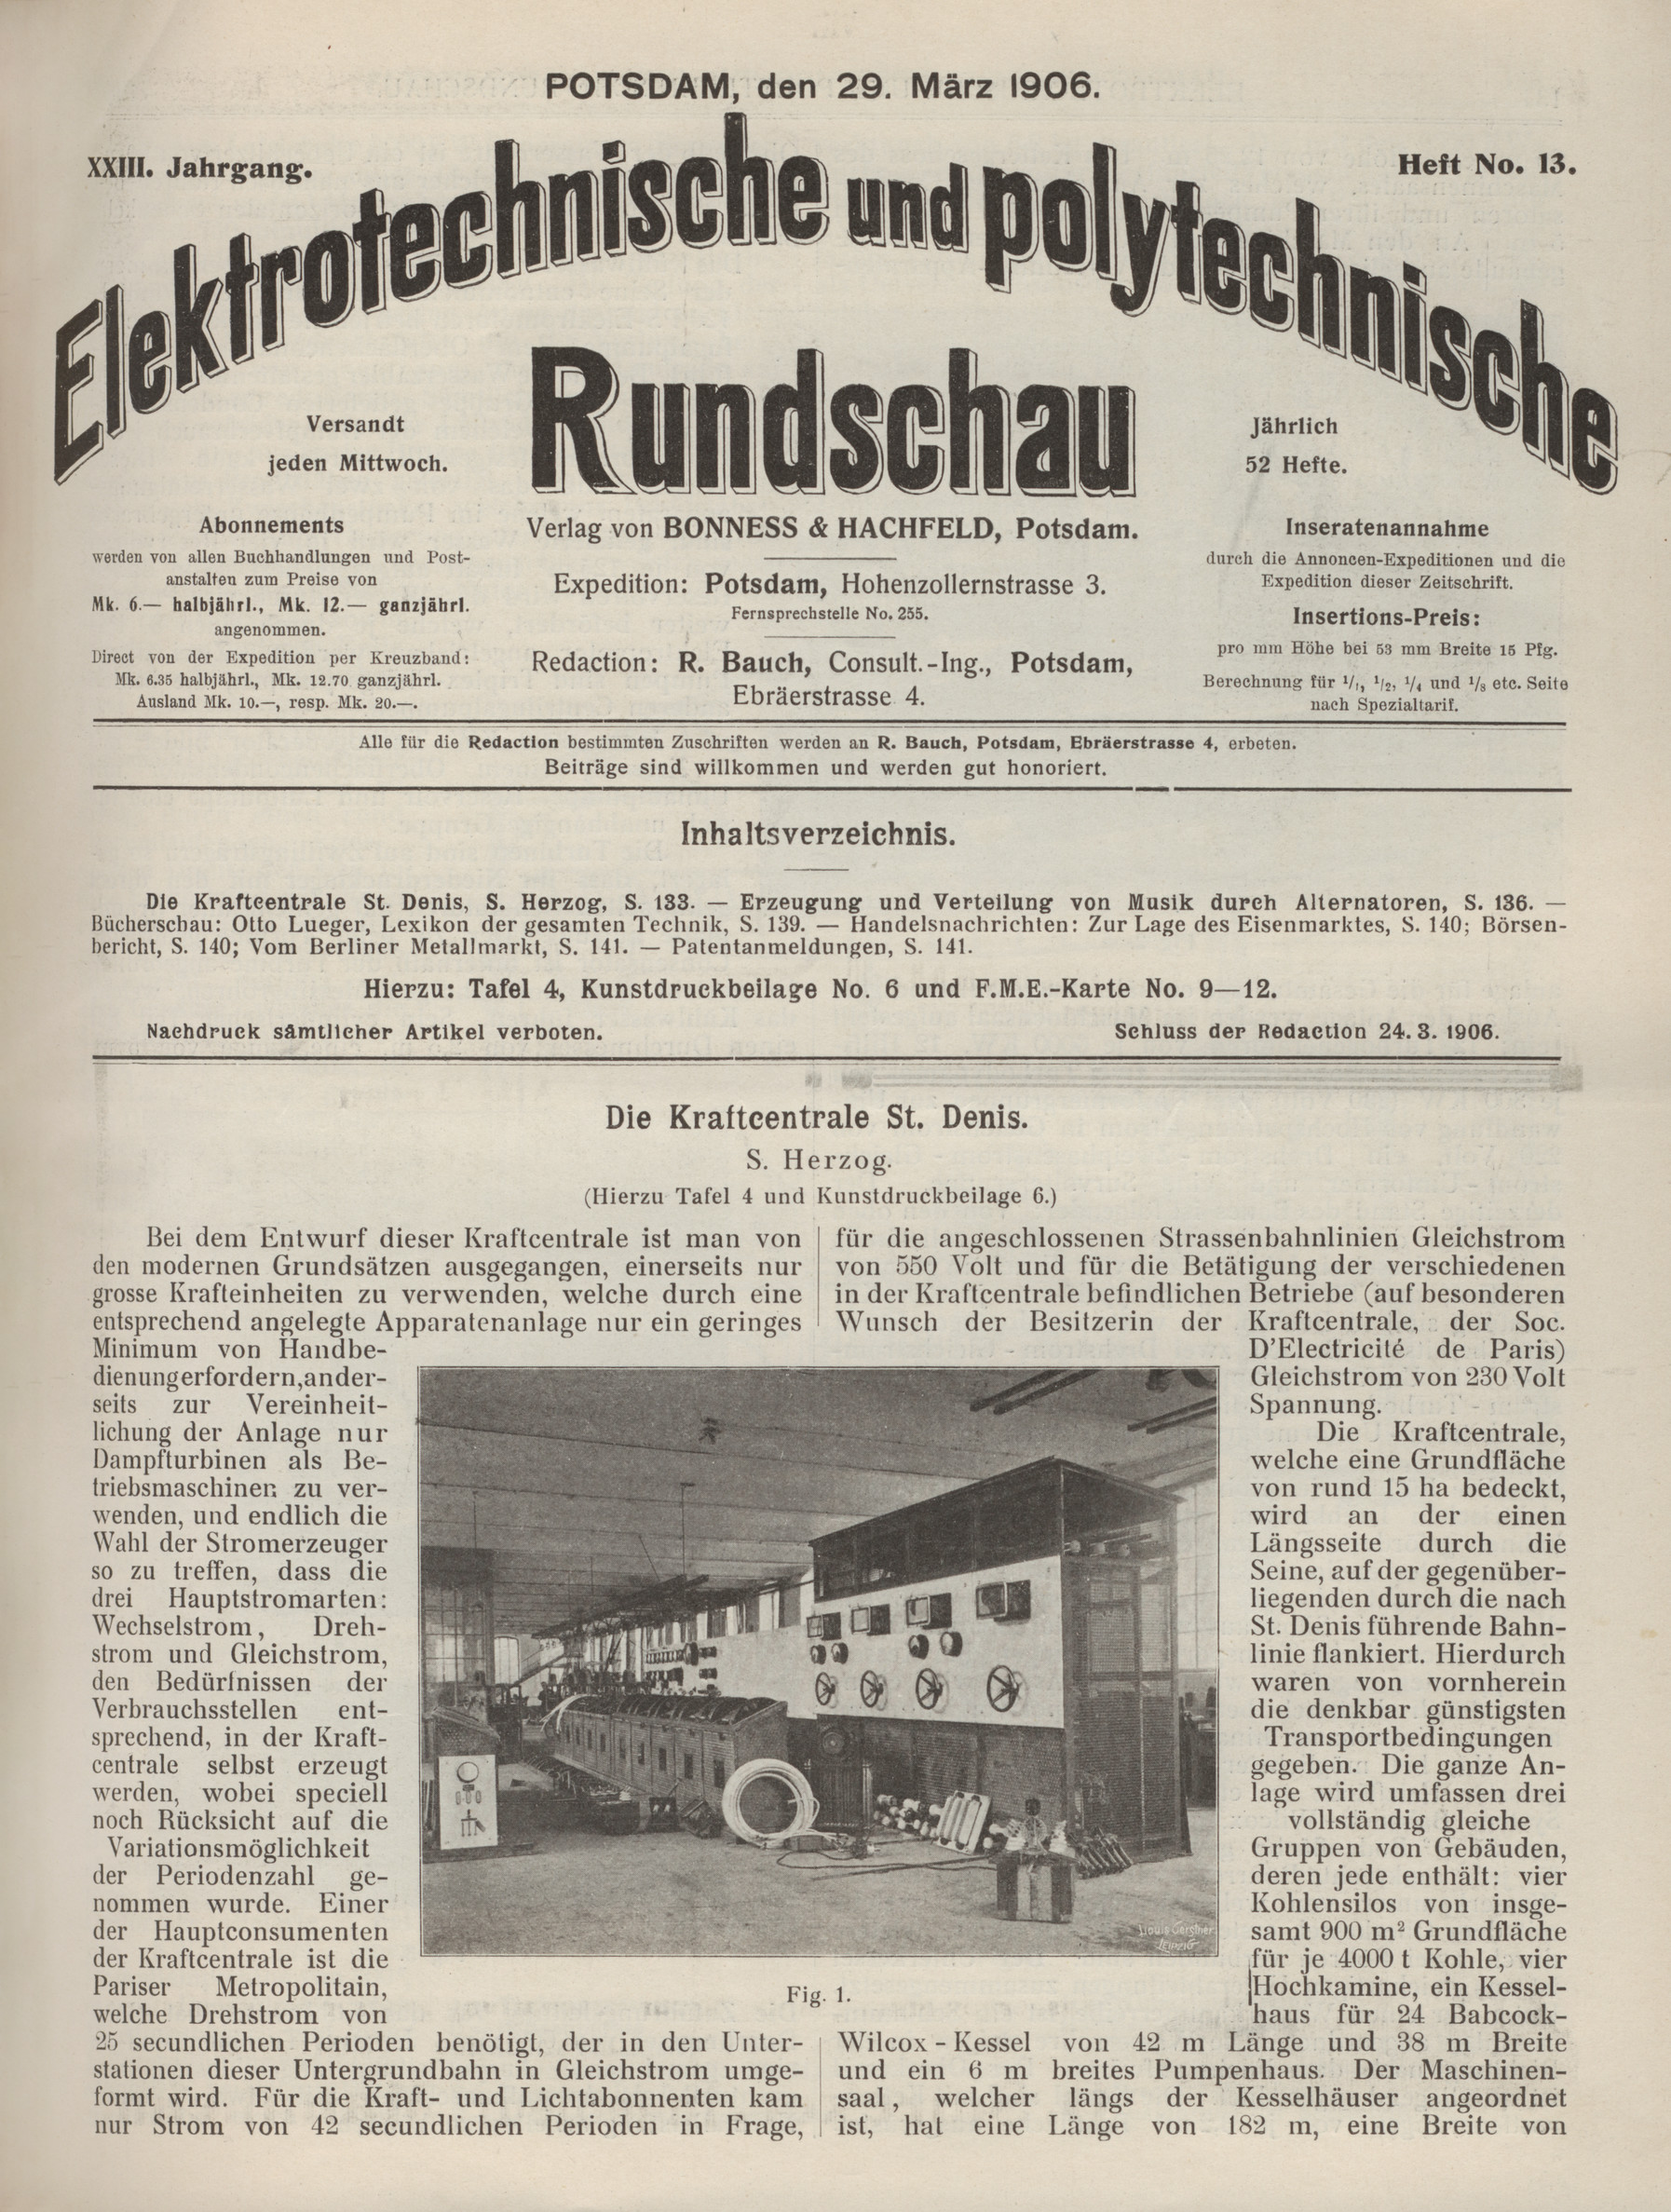 Elektrotechnische und polytechnische Rundschau, XXIII. Jahrgang, Heft No. 13